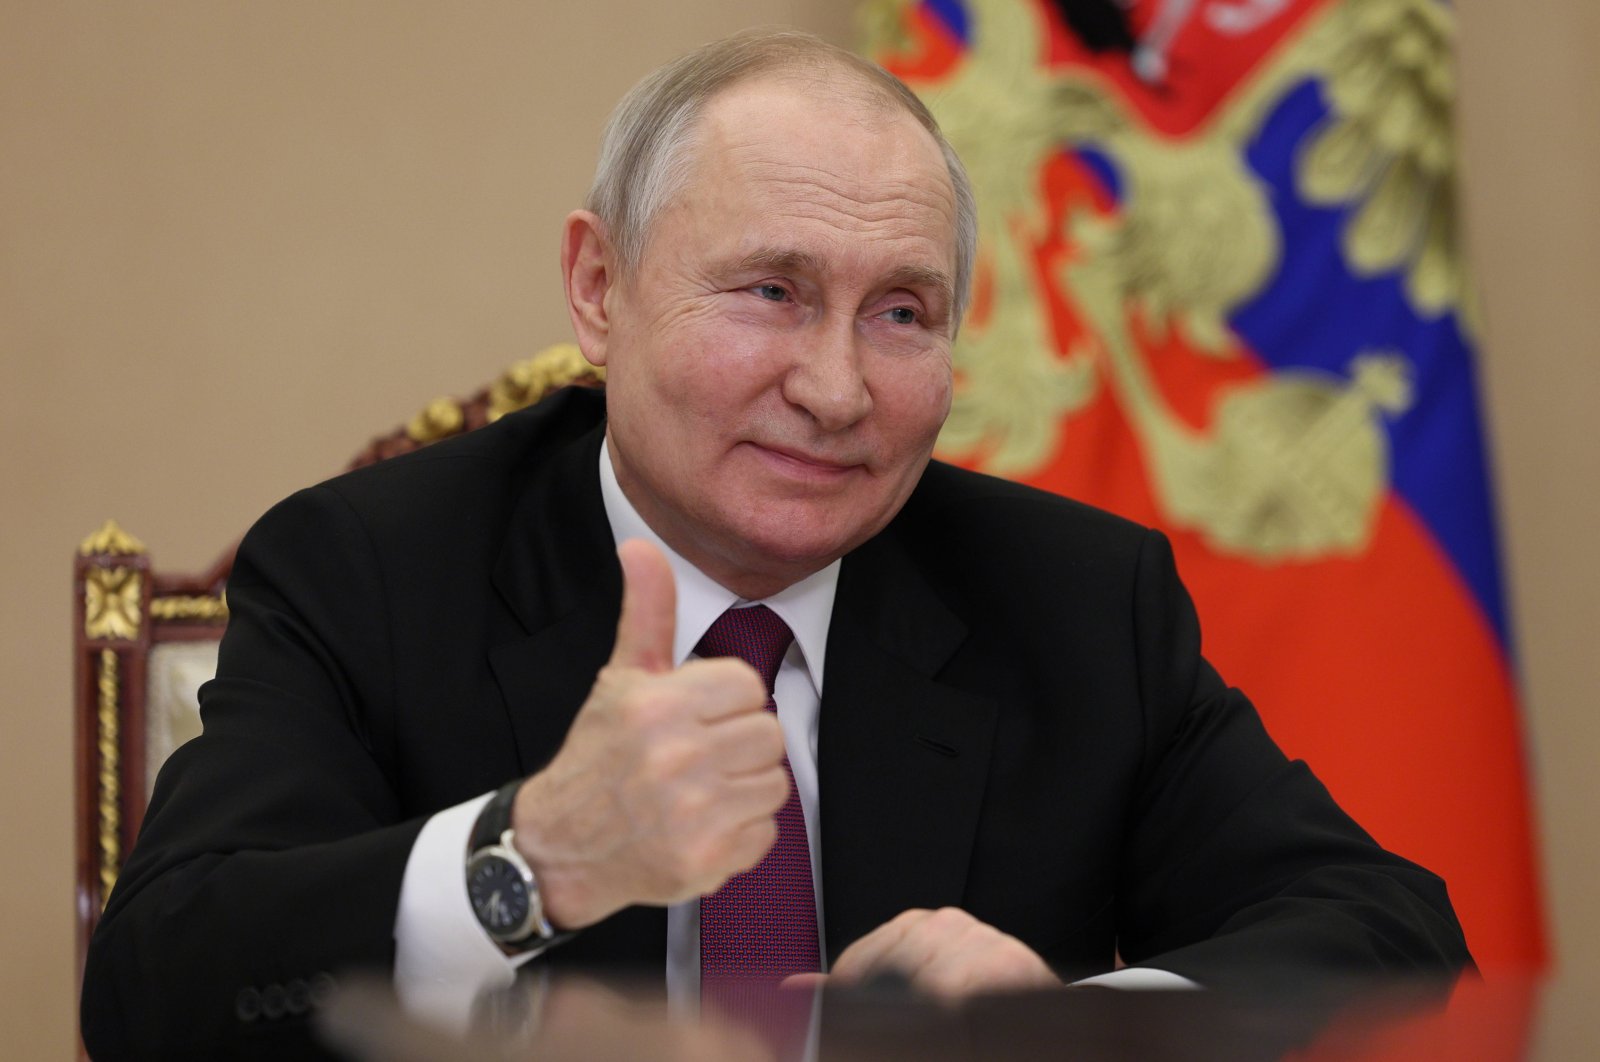 Putin menerima undangan KTT BRICS meskipun ada surat perintah penangkapan internasional